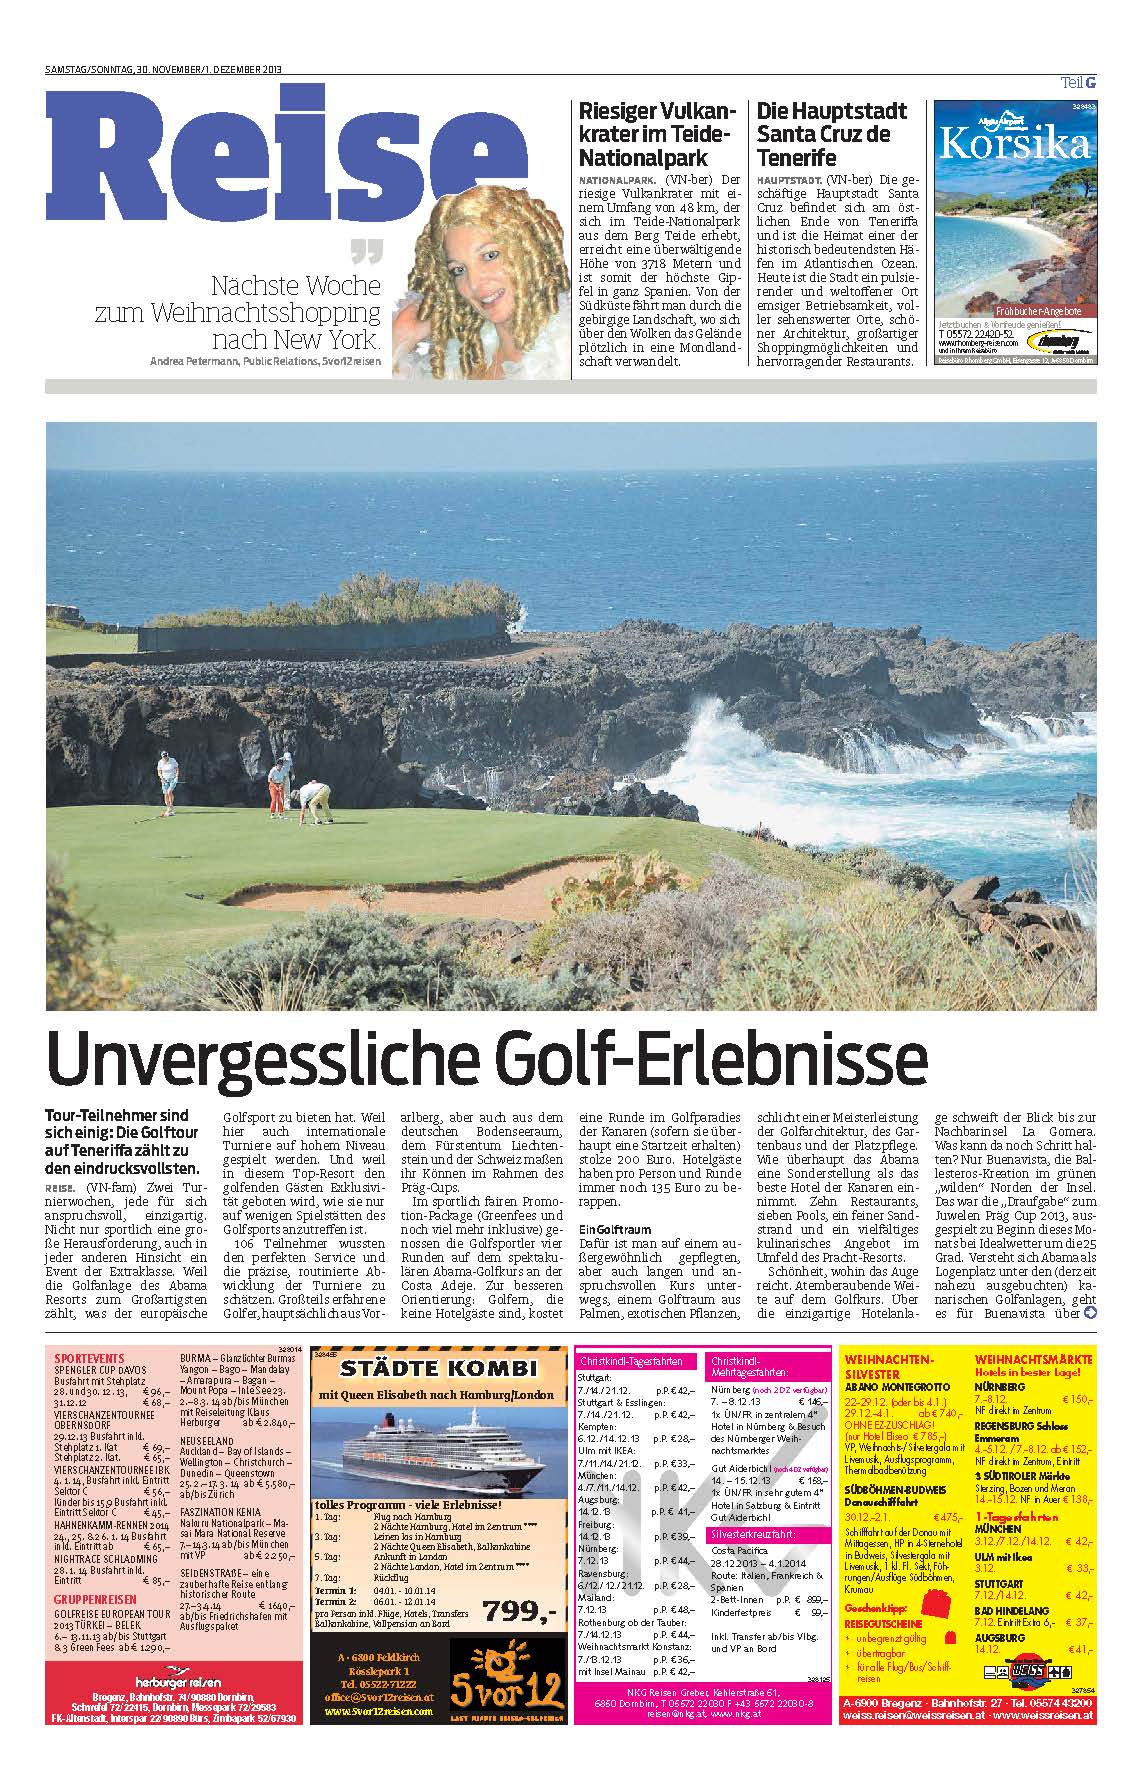 Unvergessliche Golferlebnisse VN 20131130 Seite 1